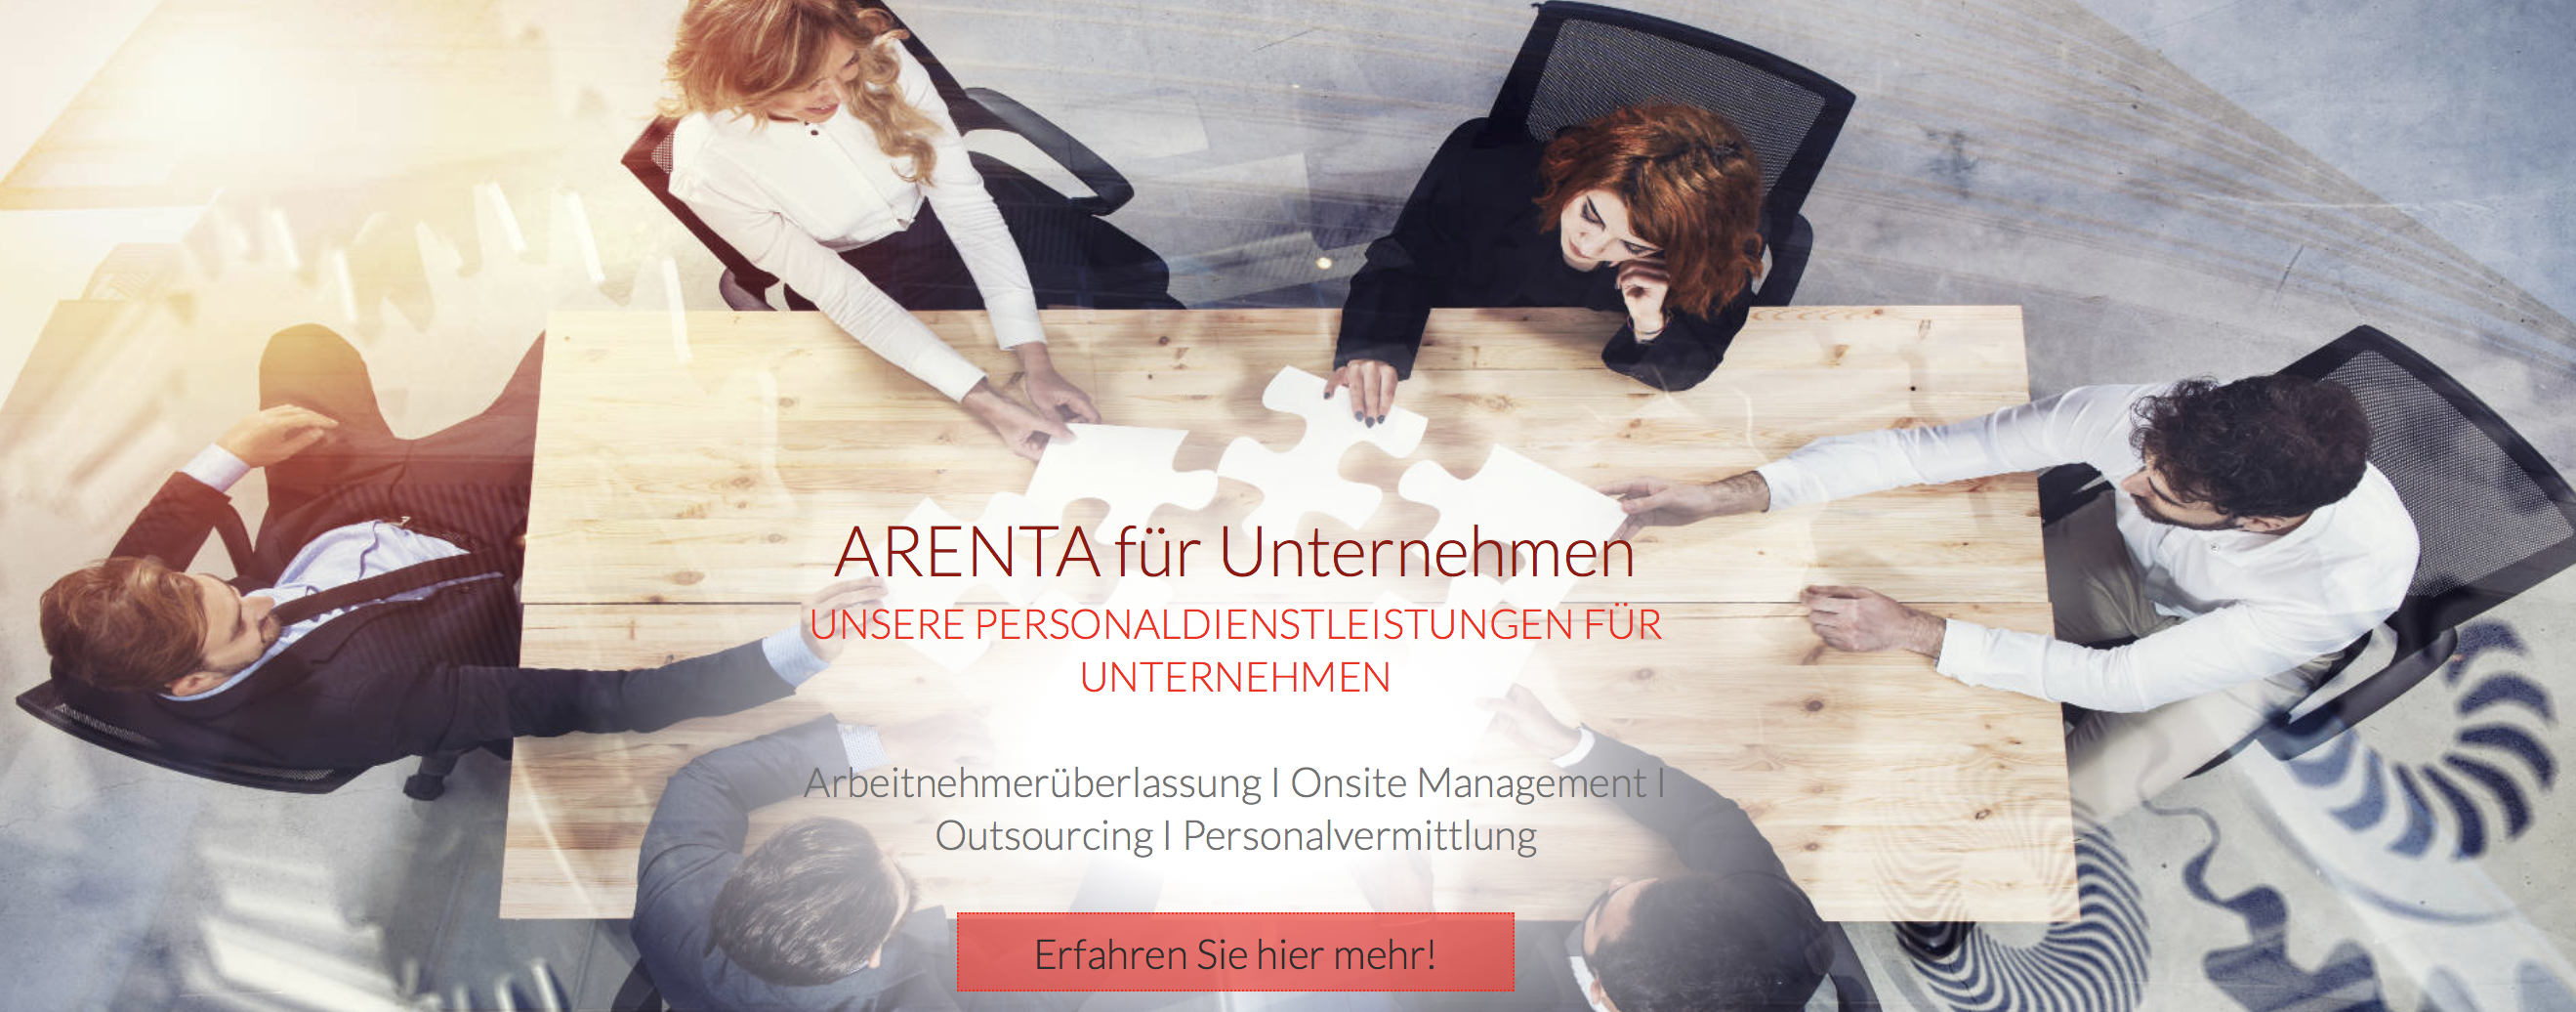 ARENTA GmbH - Personaldienstleistungen